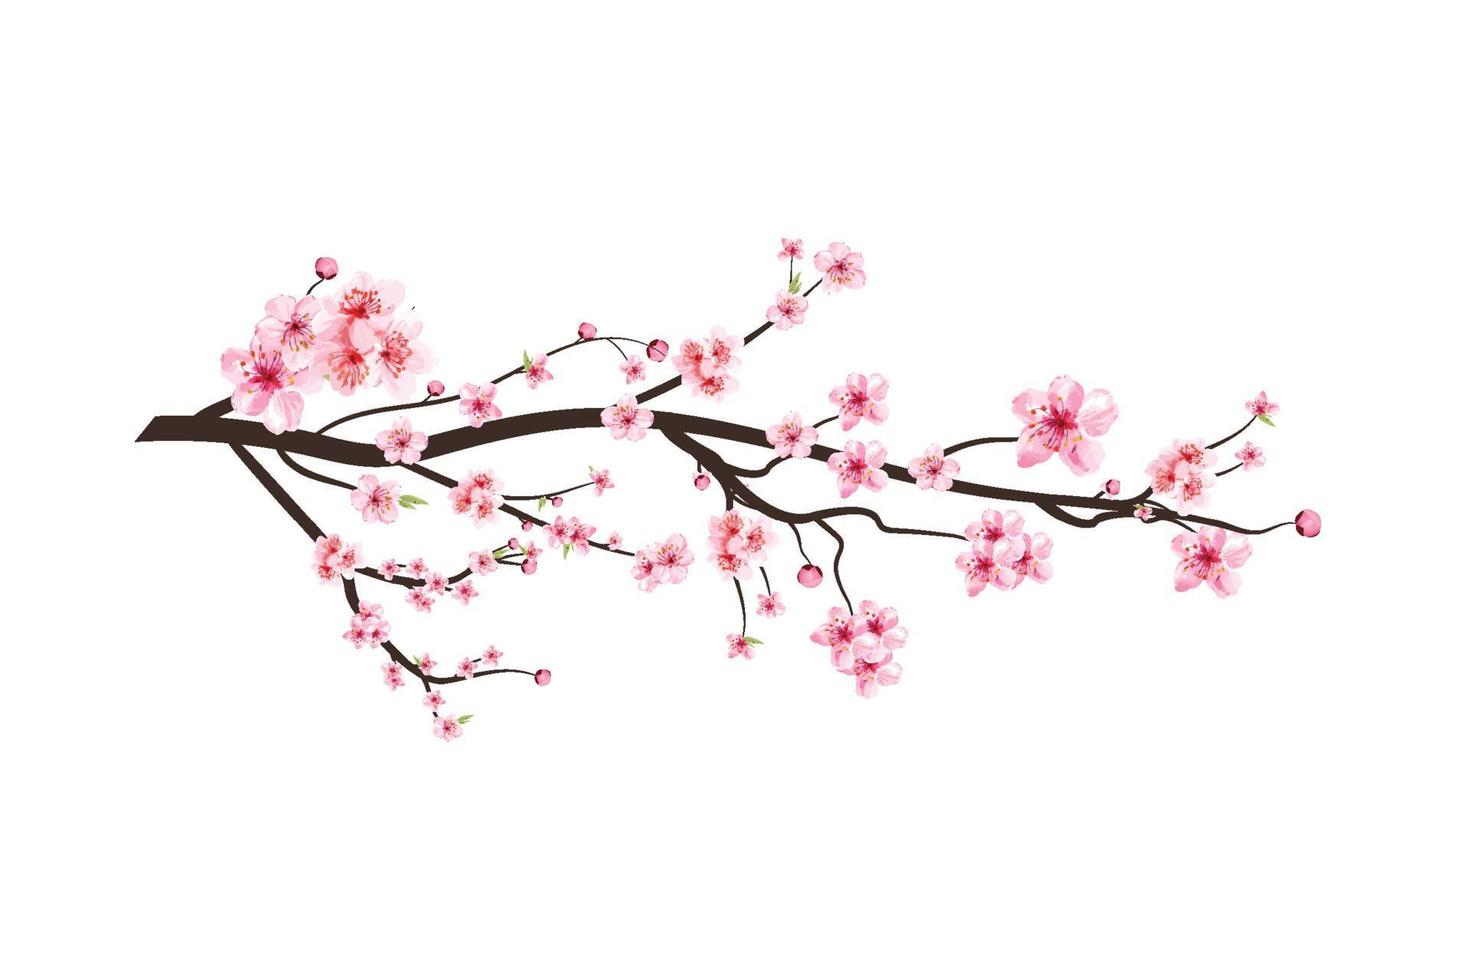 rama de flor de cerezo con flor de sakura acuarela en flor. extensión de la flor de sakura acuarela realista. vector de flor de cerezo japonés. rama de flor de cerezo con vector de flor de sakura rosa.